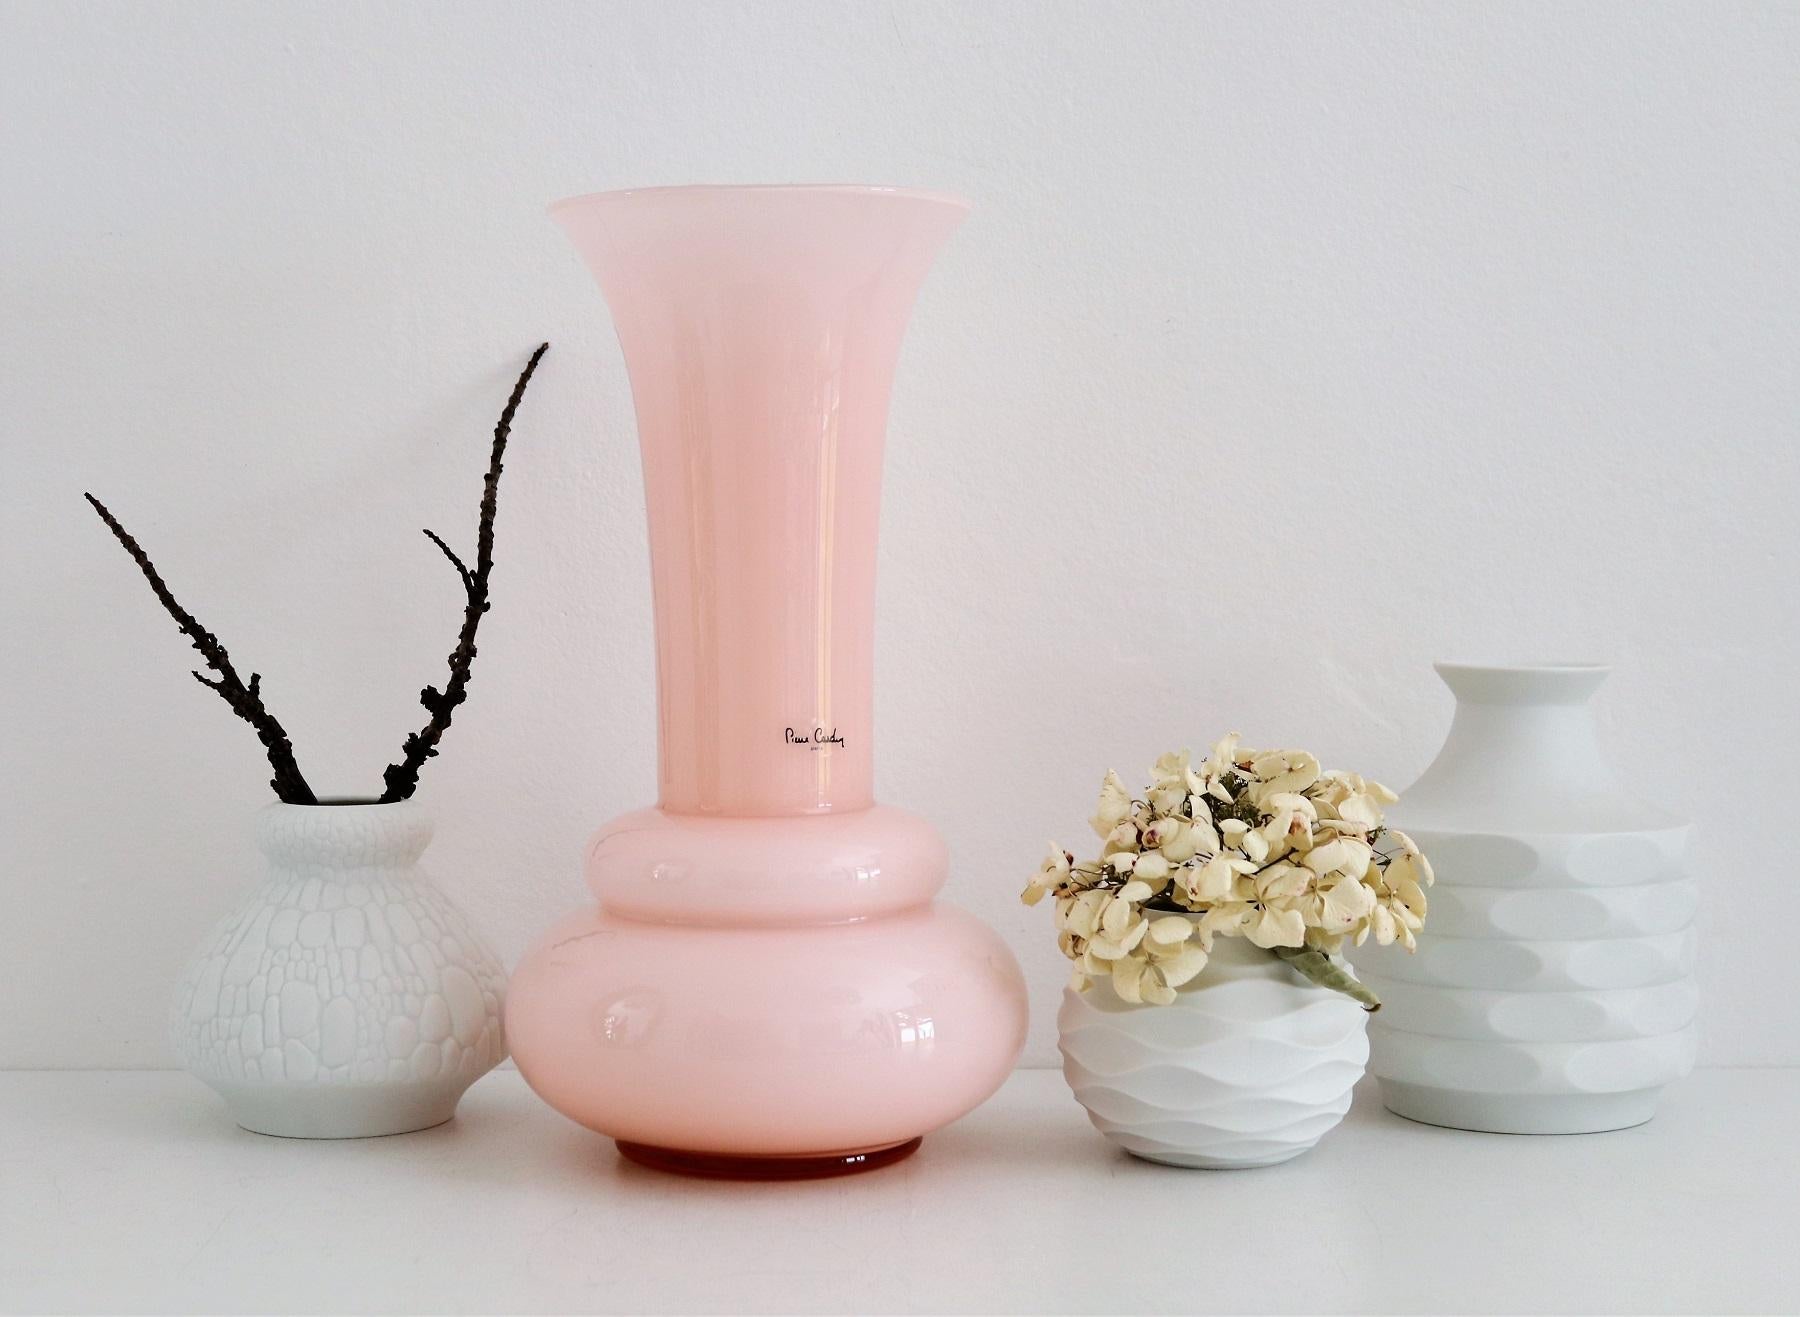 Magnifique vase décoratif chic en verre de couleur rose clair - rose, fabriqué en verre.
Avec étiquette originale 